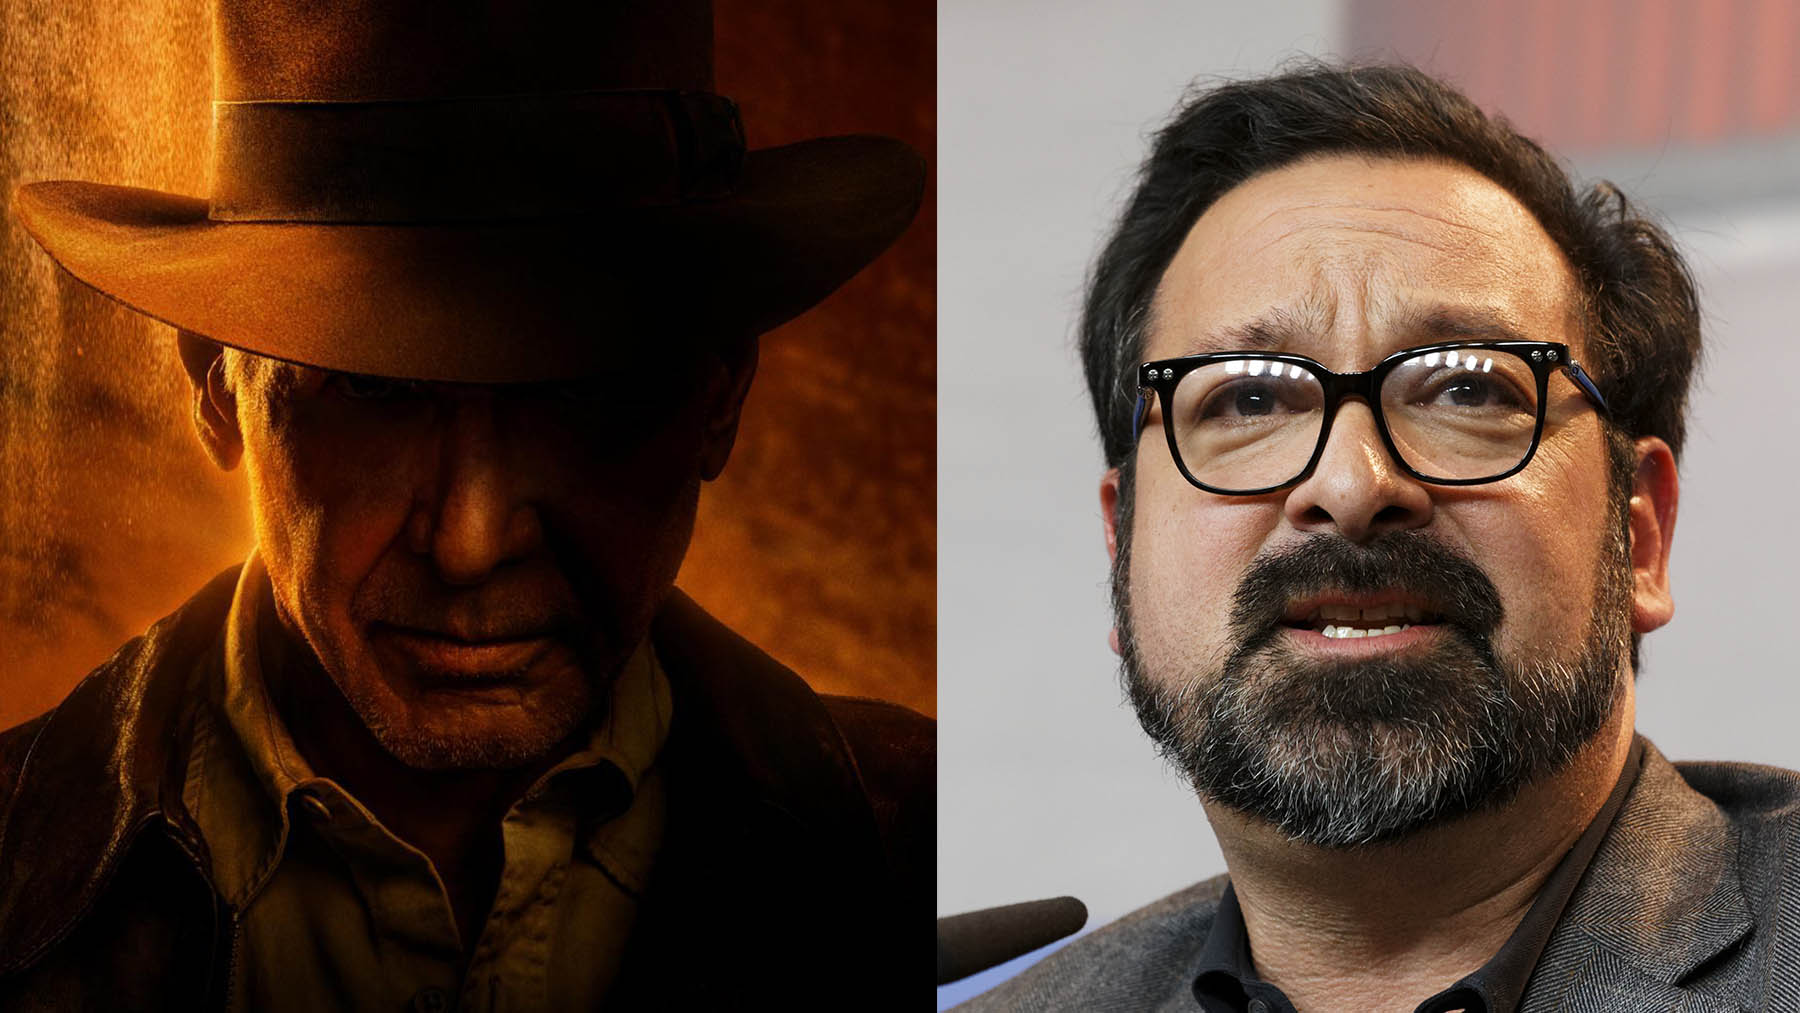 El director de ‘Indiana Jones y el dial del destino’ niega los rumores de reshoots